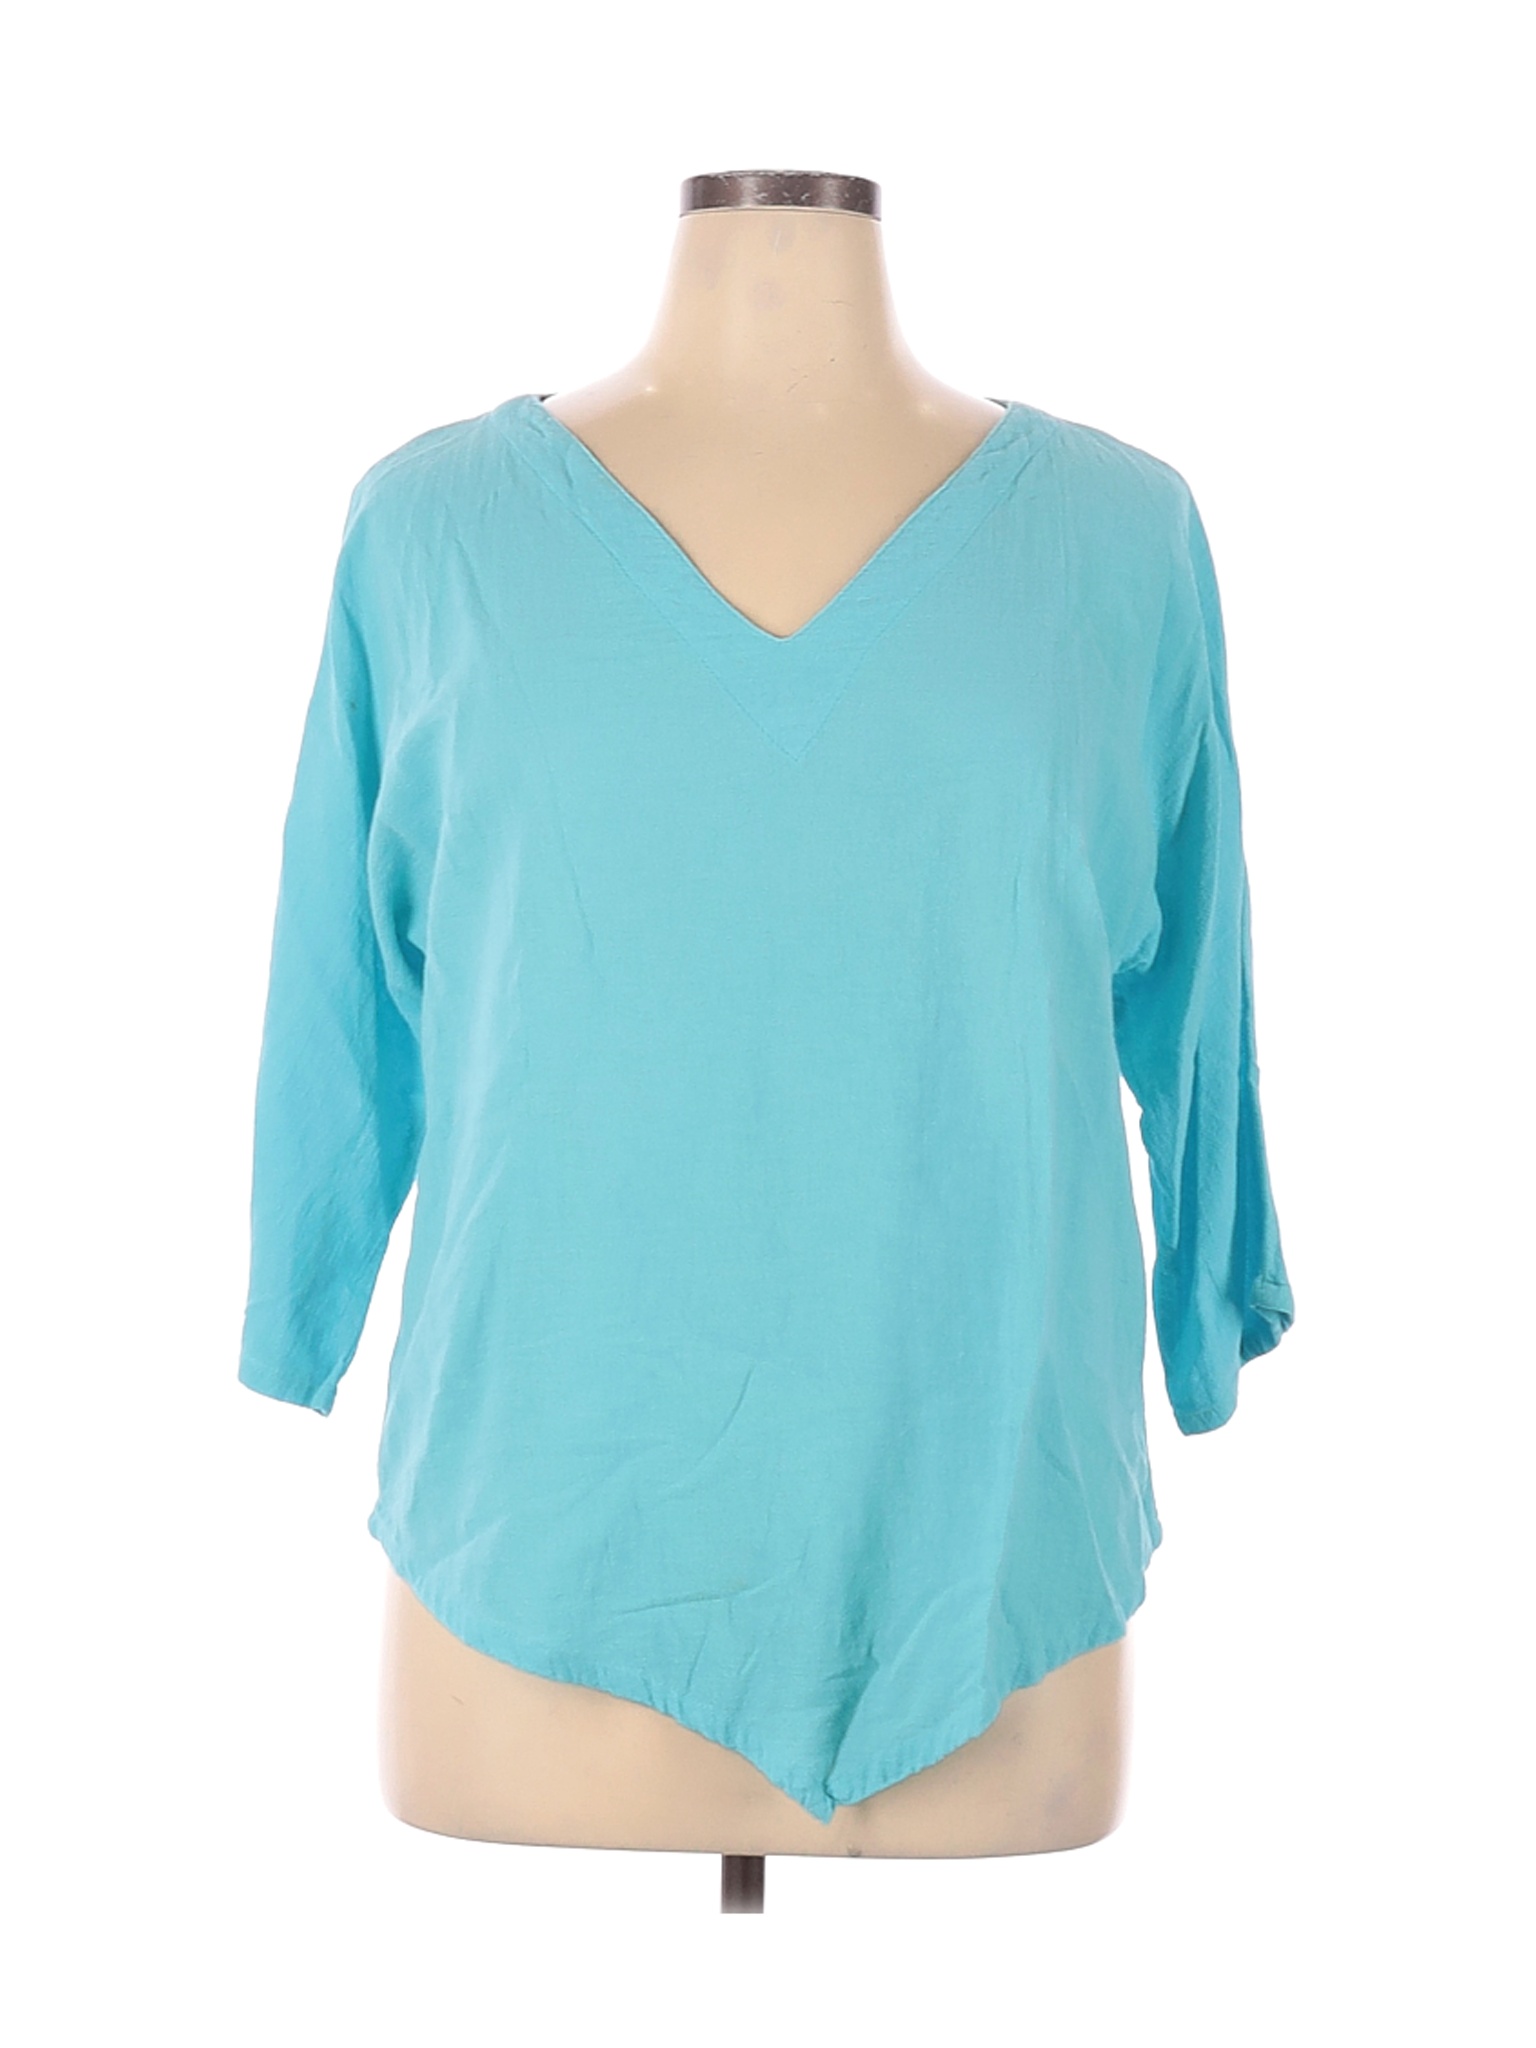 Lulu-B Women Blue 3/4 Sleeve Blouse XL | eBay